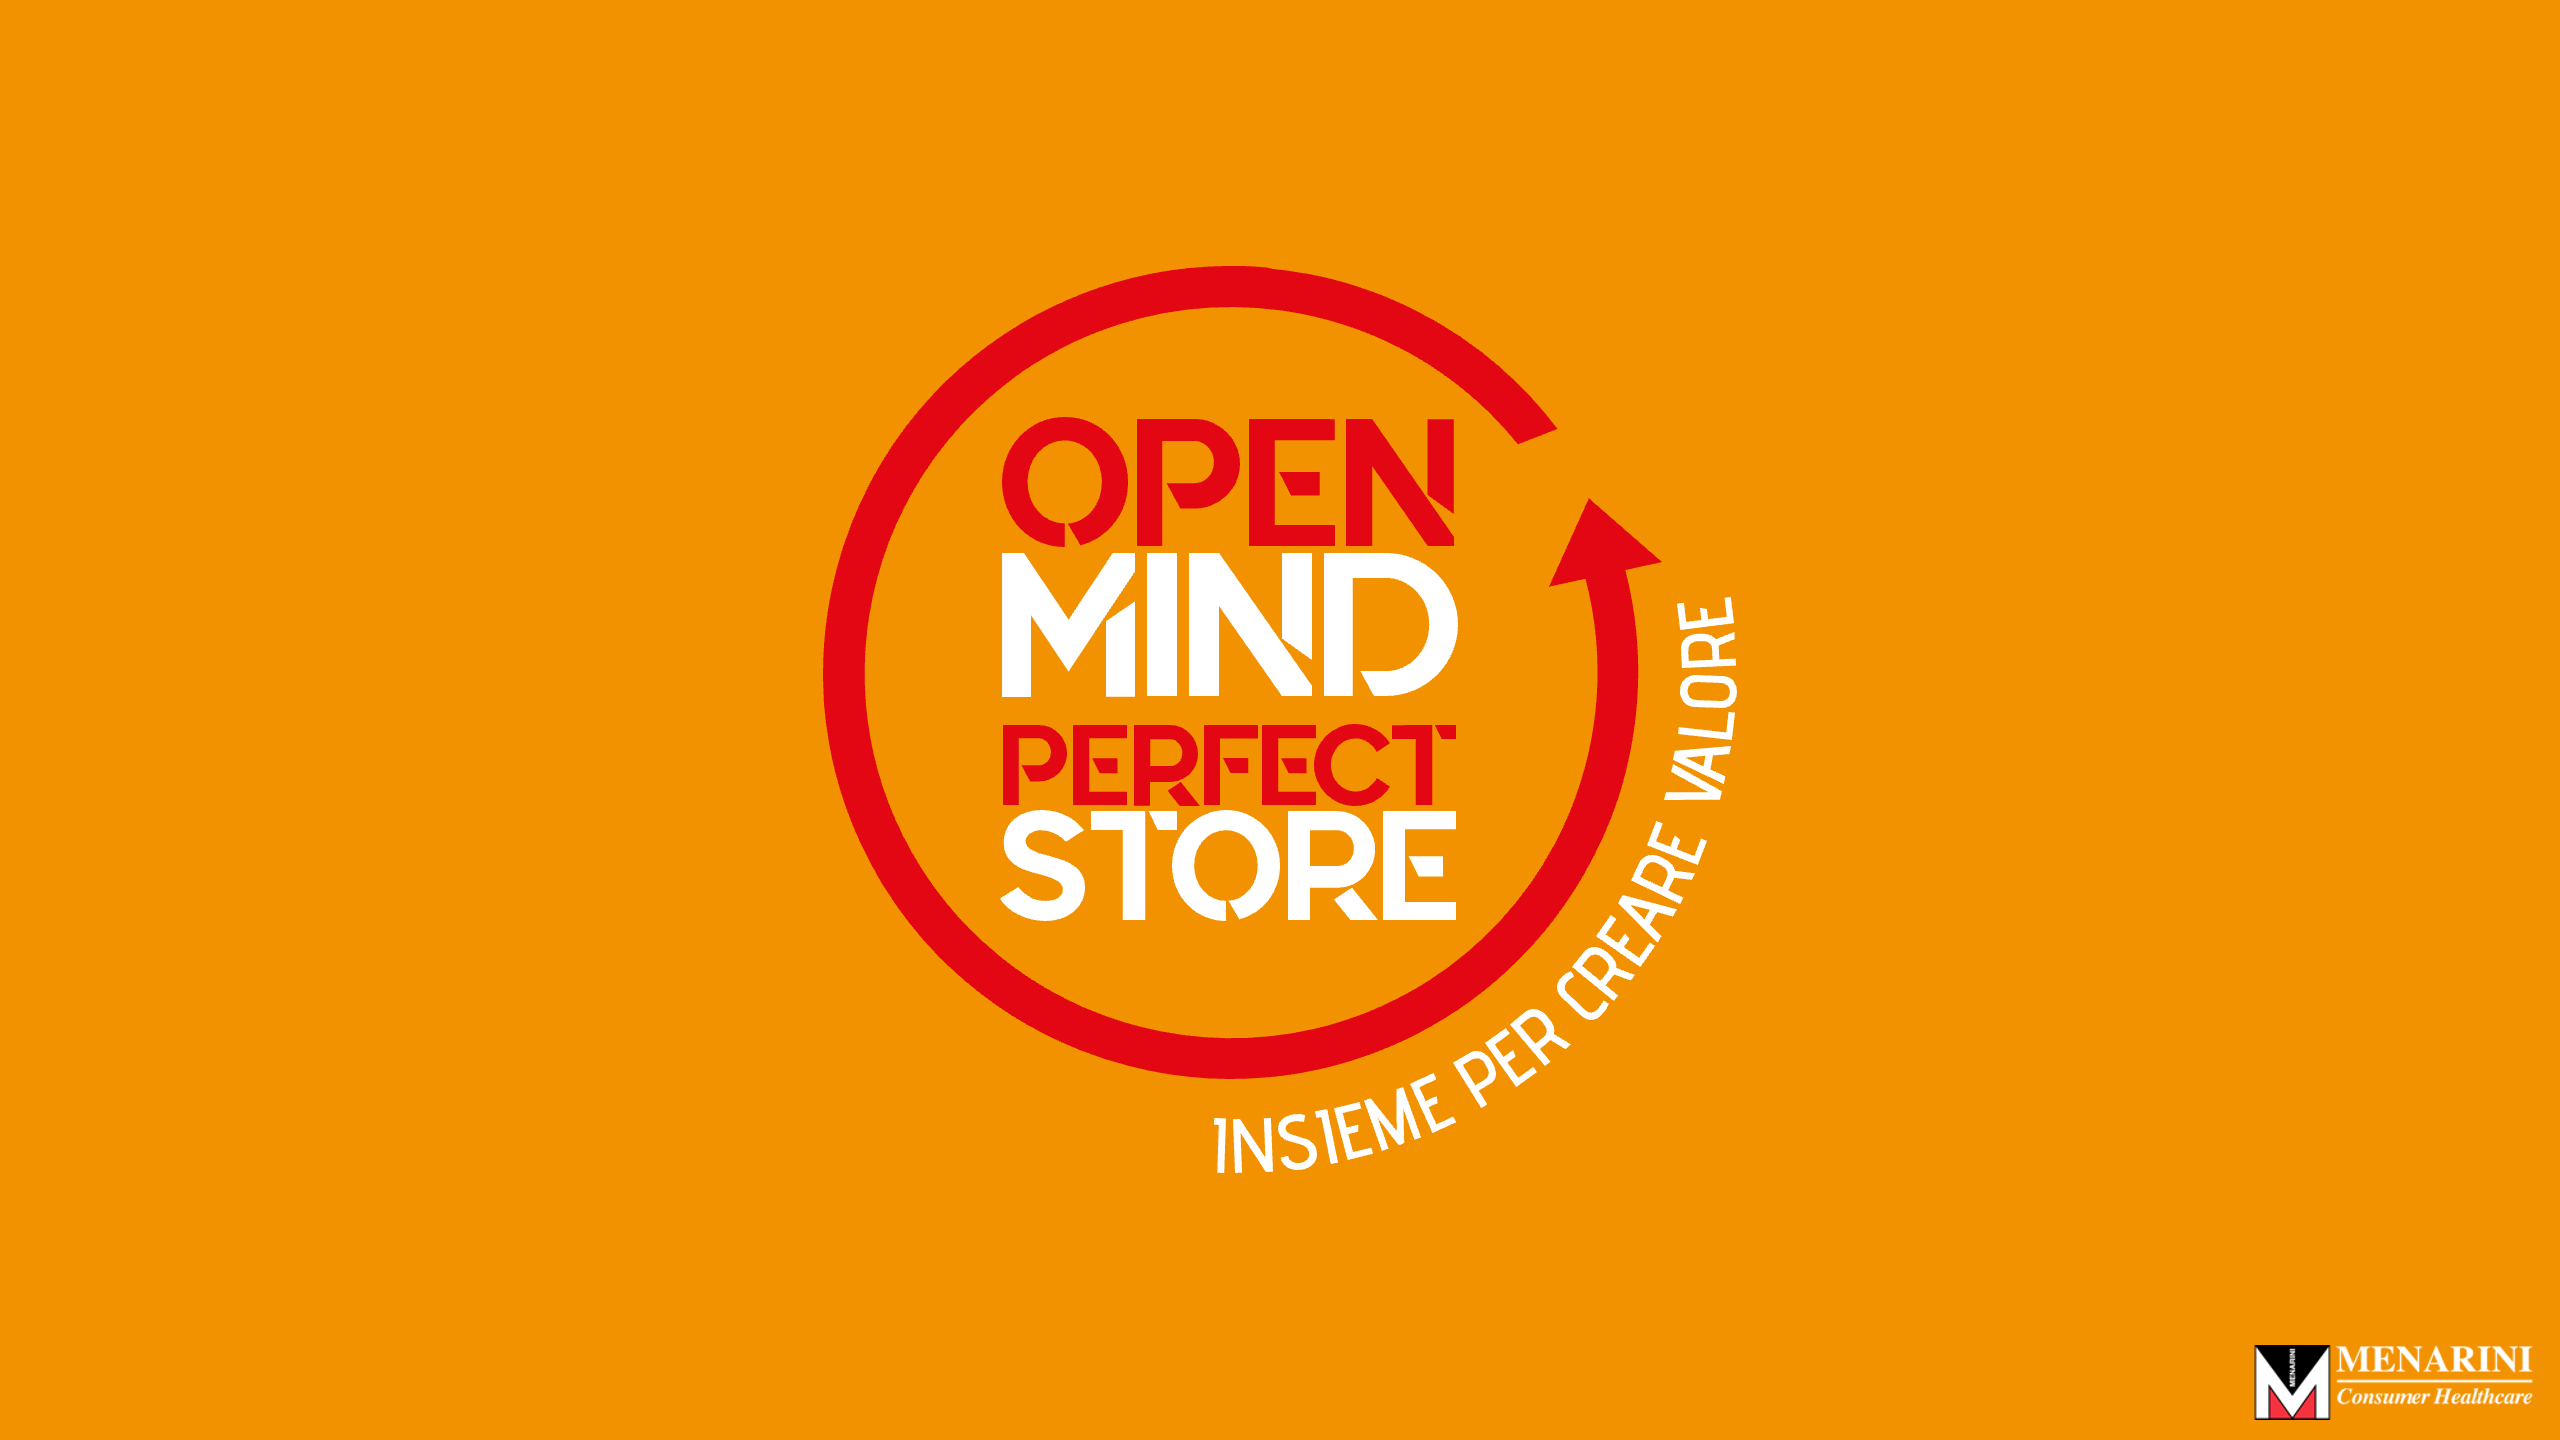 Open Mind Perfect Store Sustenium Menarini